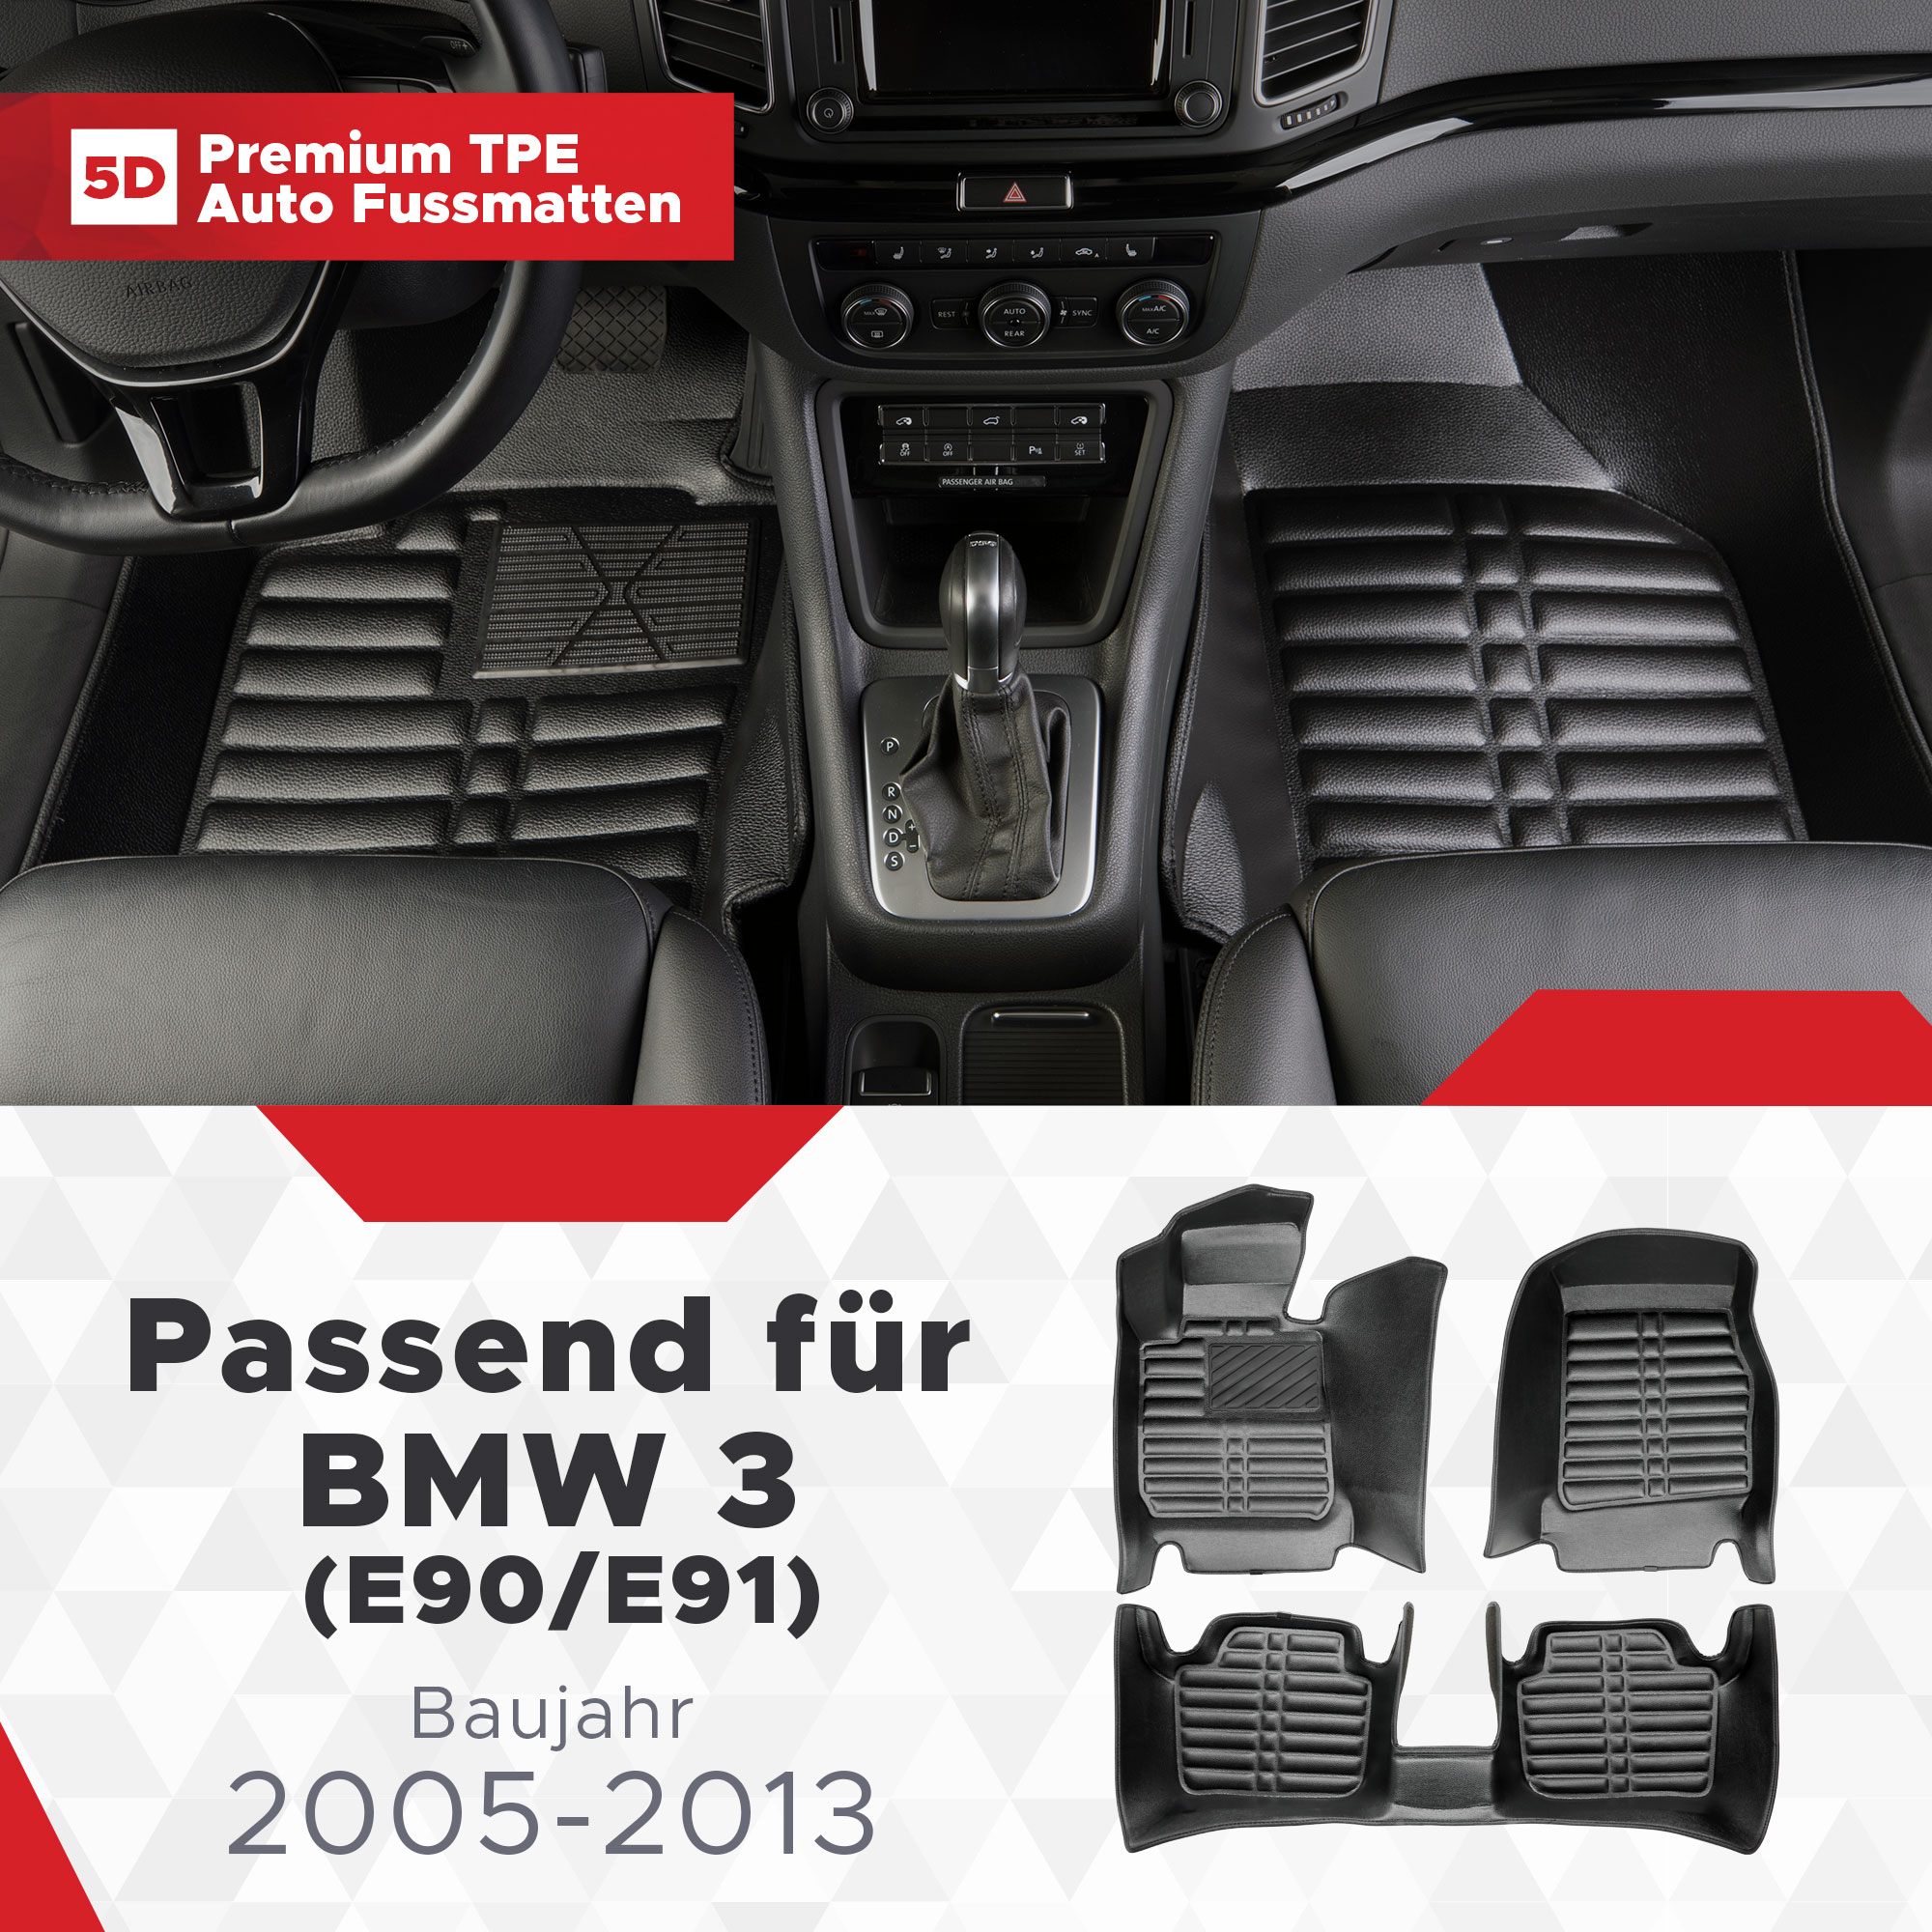 5D Bj (E90/E91) BMW 3 Fussmatten 2005-2013 TPE